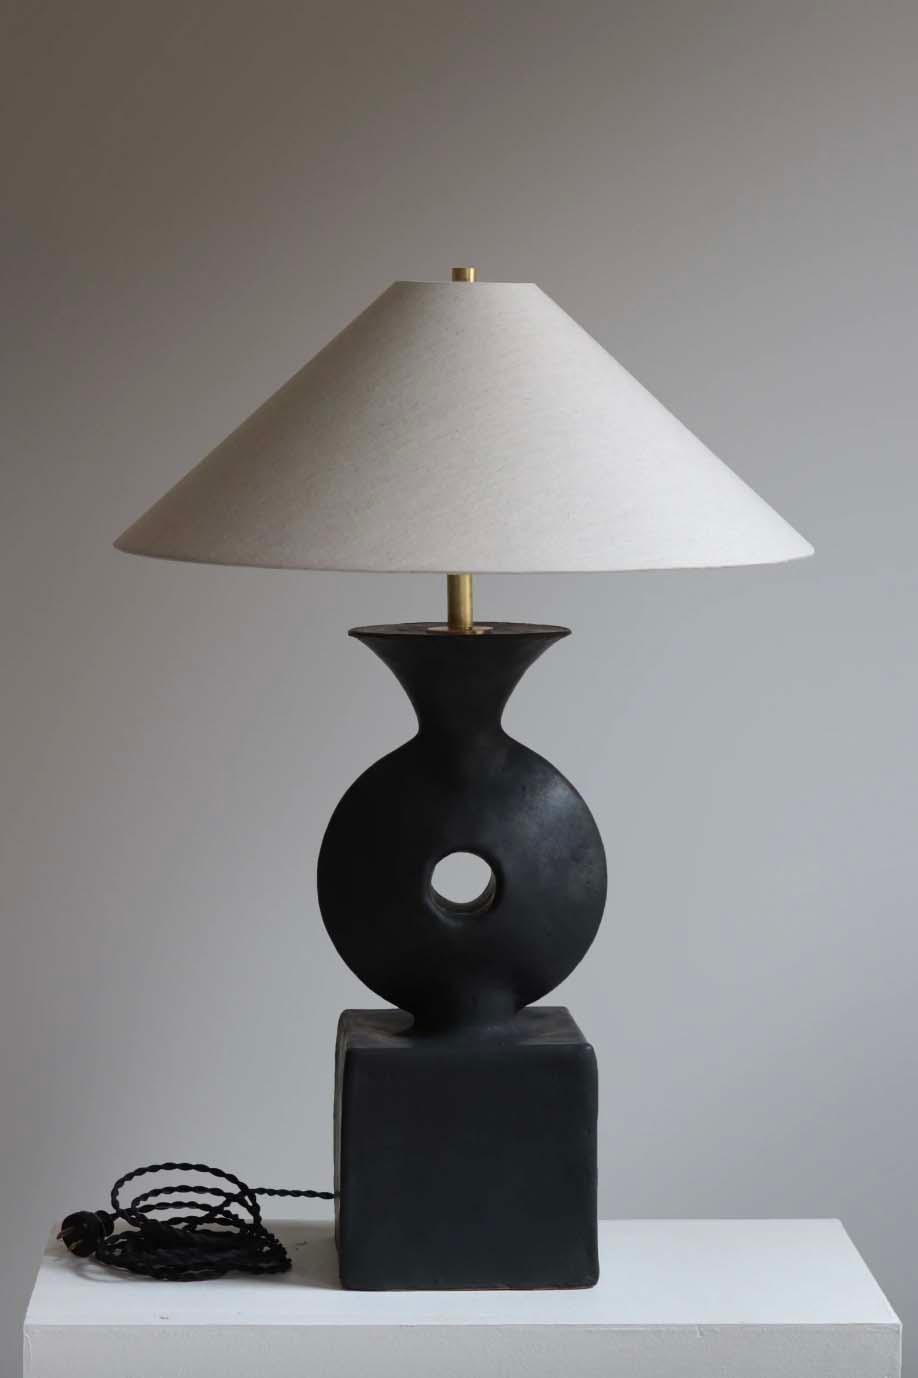 La lámpara Felix es cerámica de estudio hecha a mano por el artista ceramista Danny Kaplan. Pantalla incluida. Ten en cuenta que las dimensiones exactas pueden variar.

Nacido en Nueva York y criado en Aix-en-Provence (Francia), la pasión de Danny